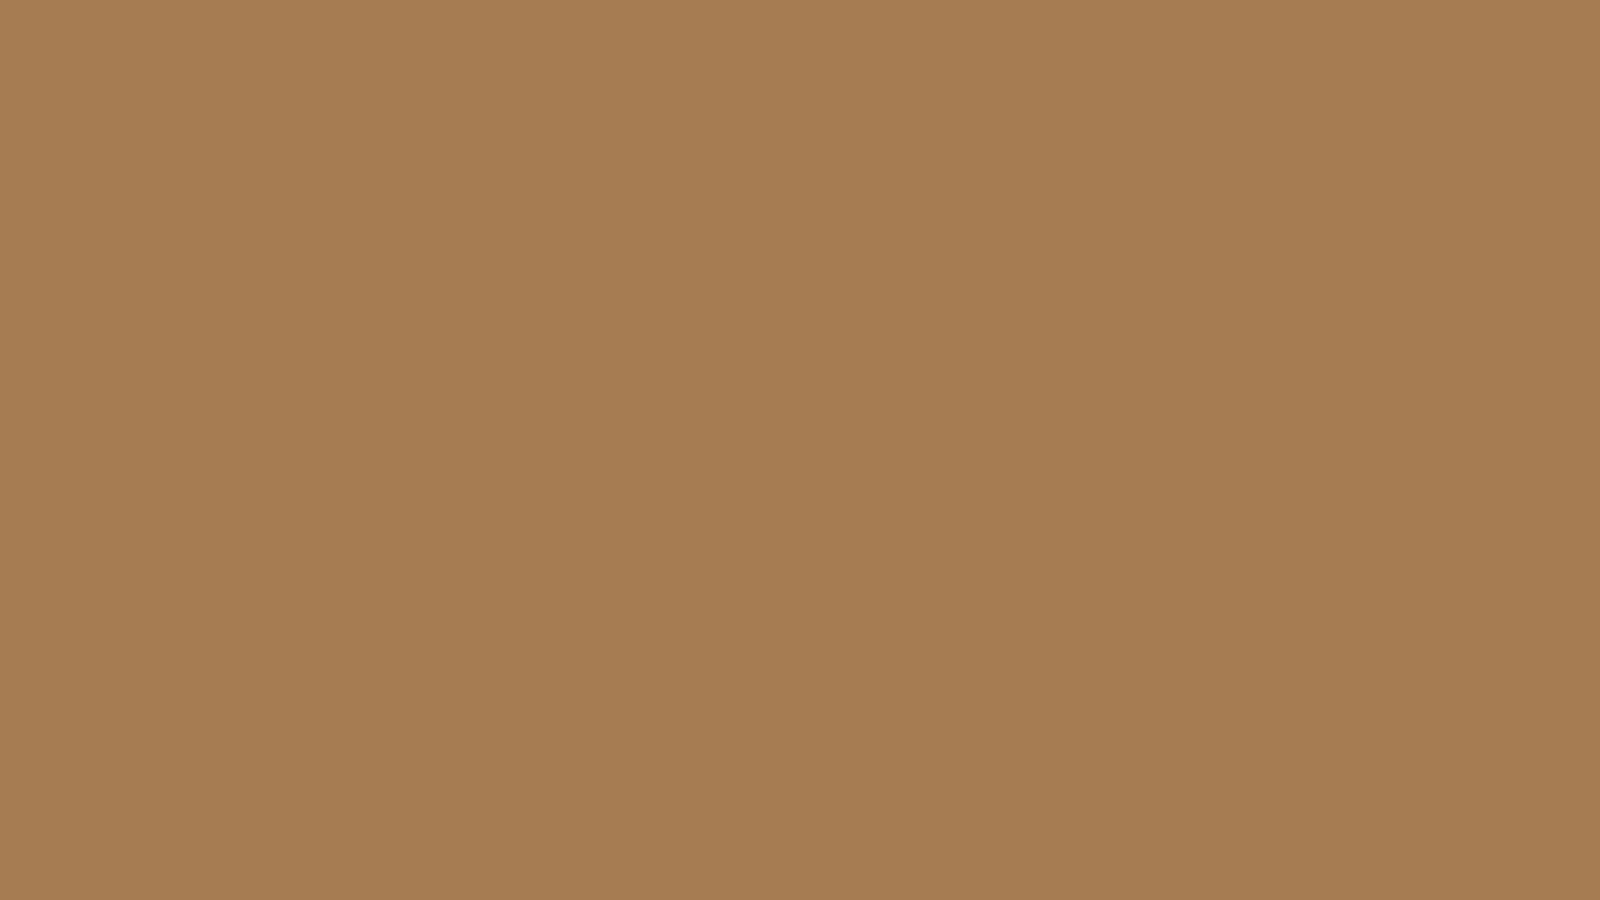 Light Brown Wallpaper 31856 1600x900 px